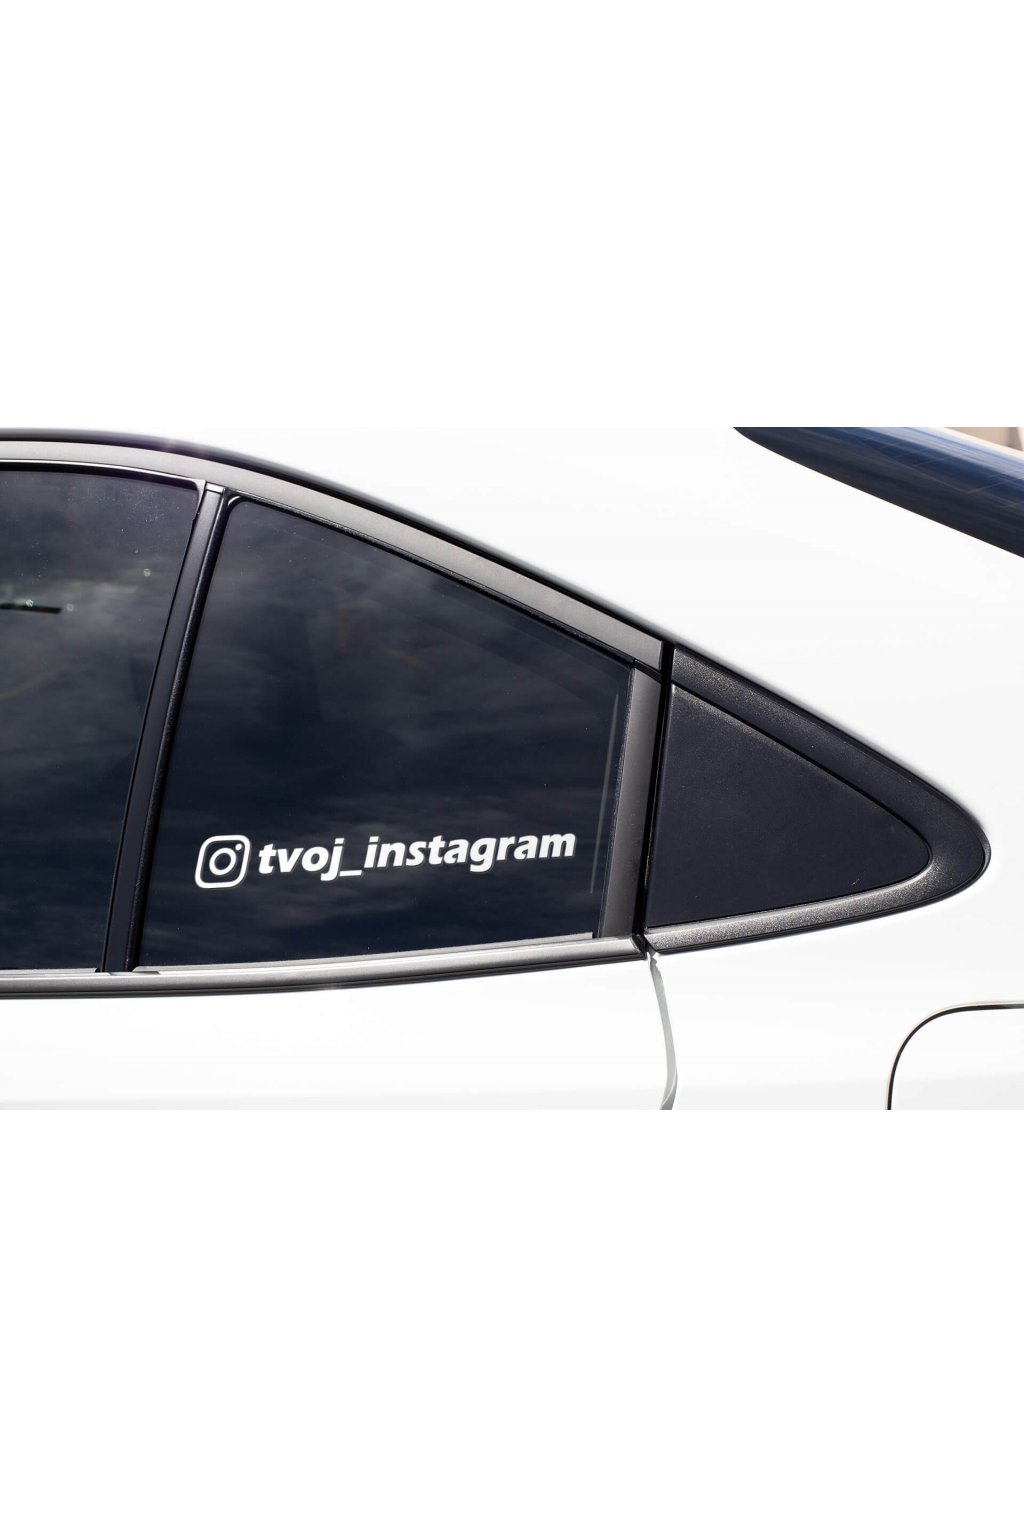 Nálepka na auto Tvoj instagram